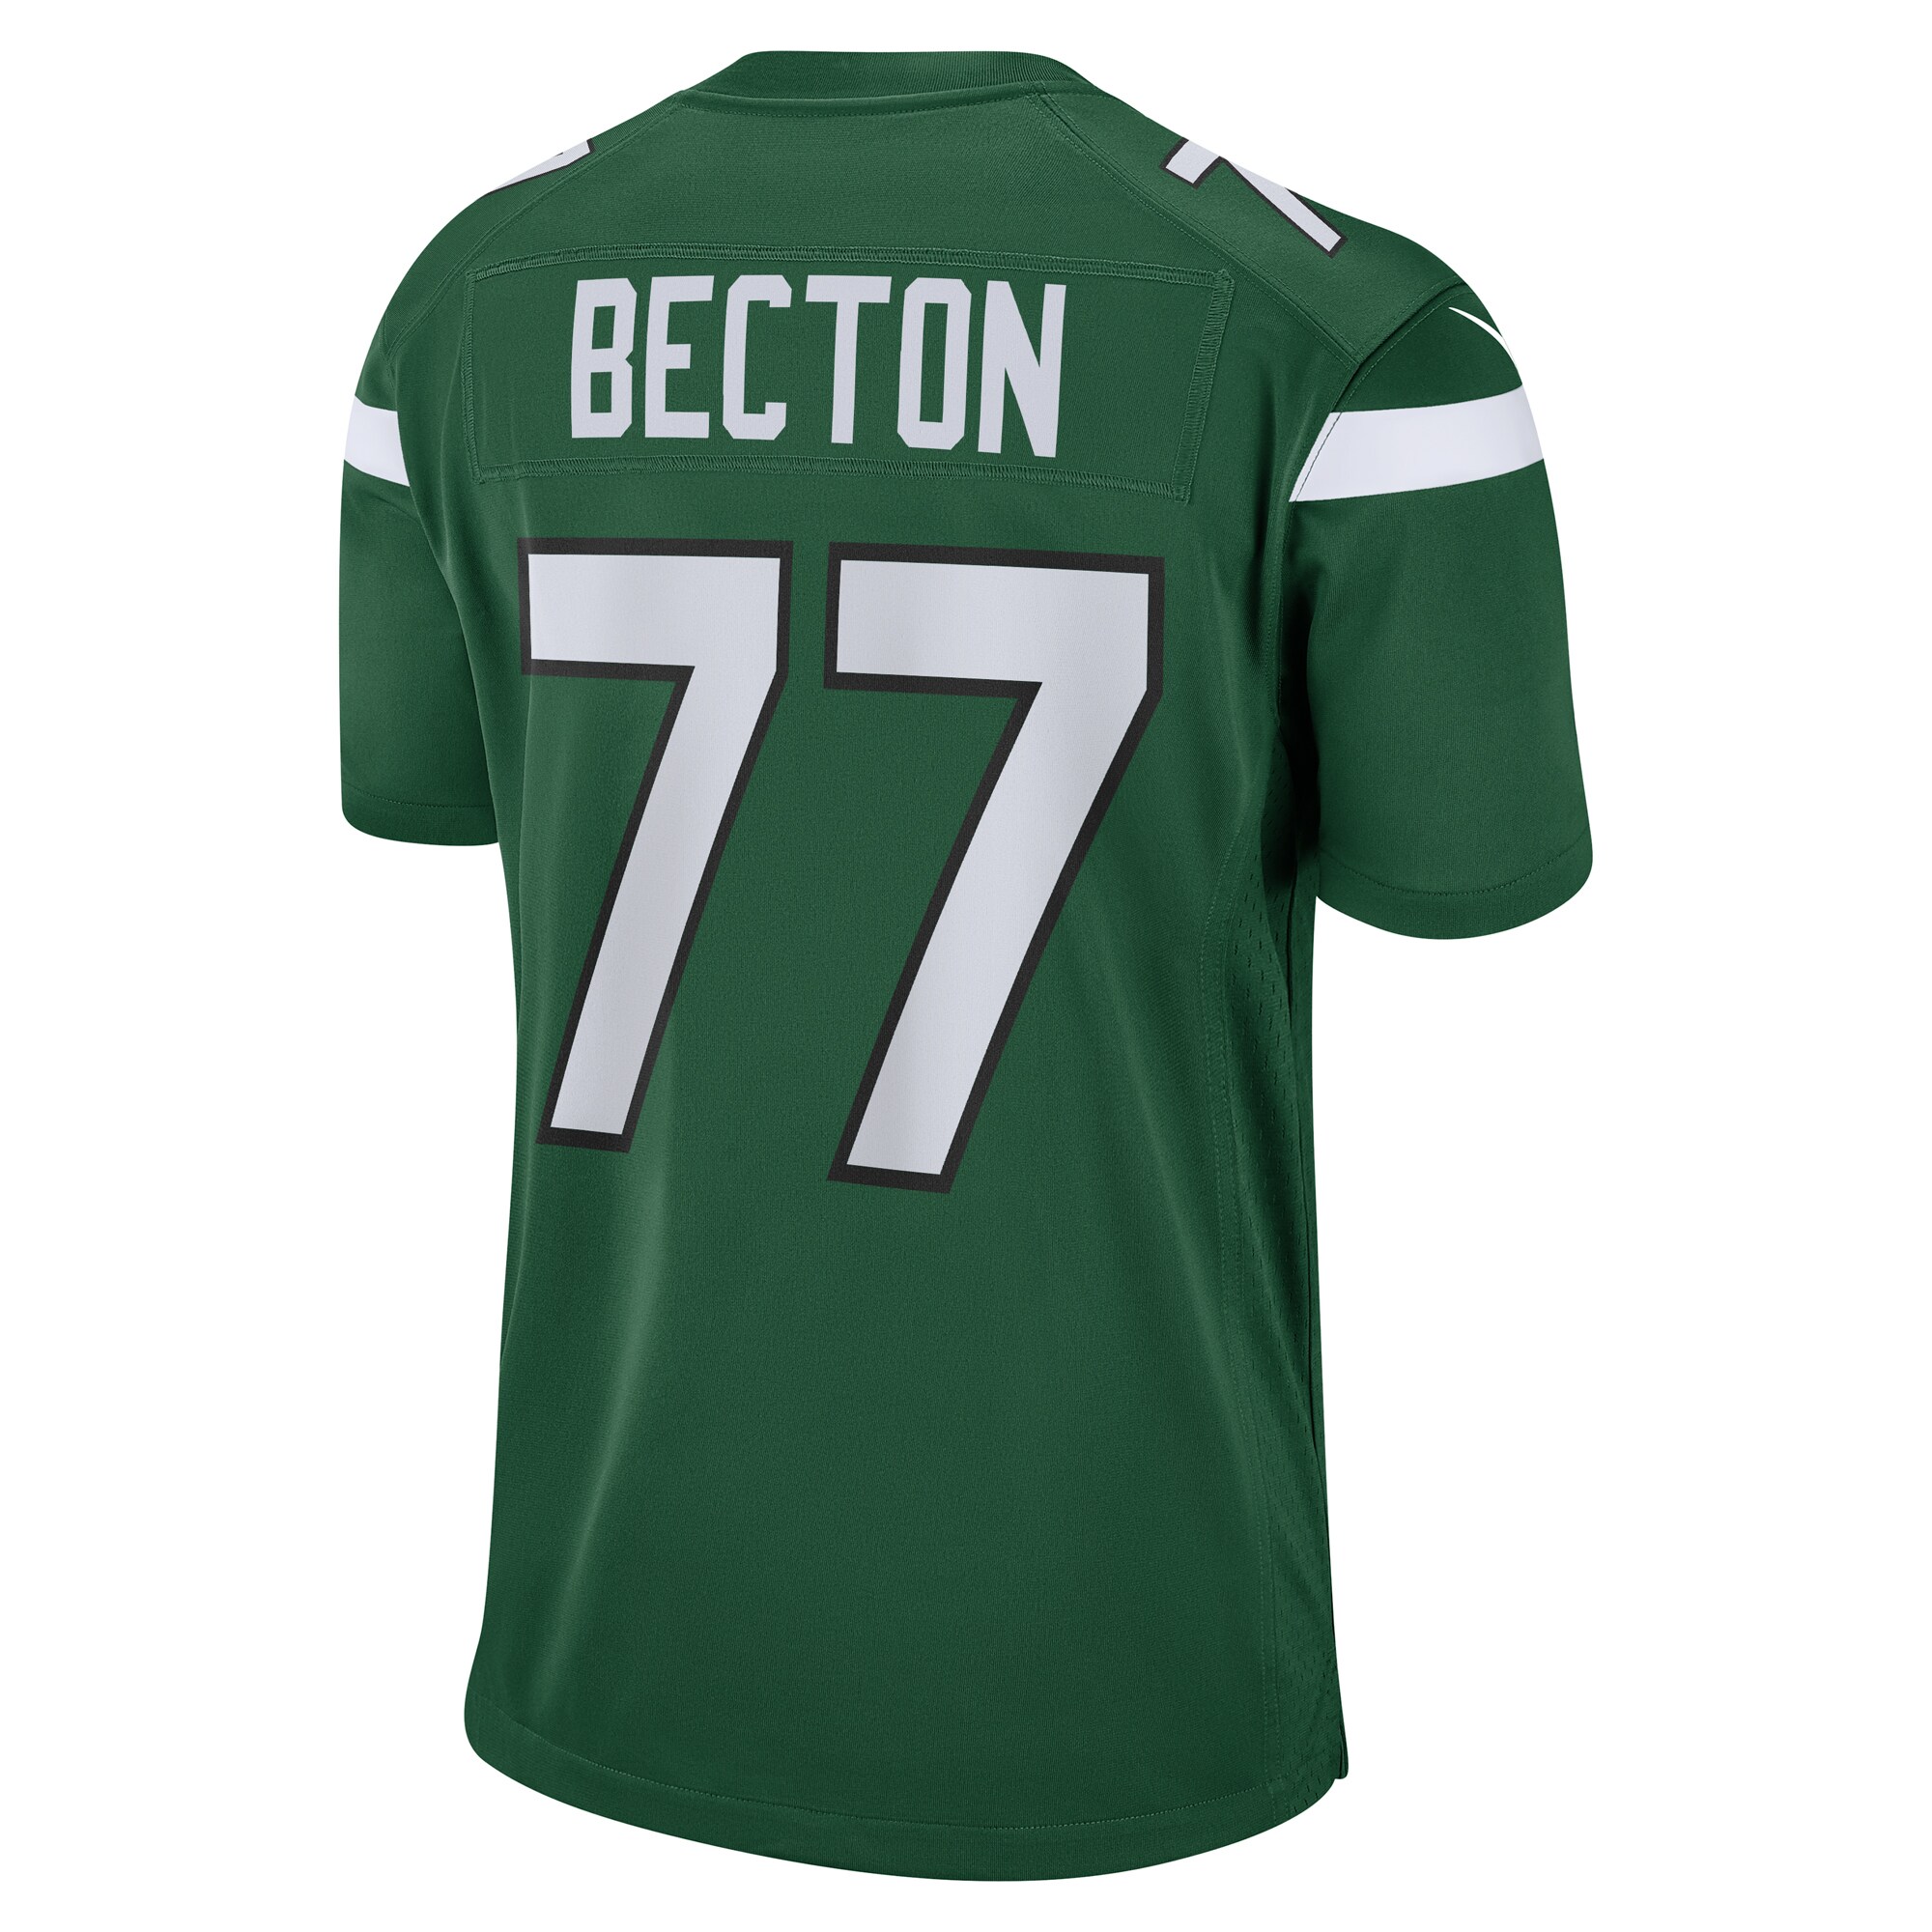 Men's New York Jets Mekhi Becton Nike Gotham Green Player Game Jersey